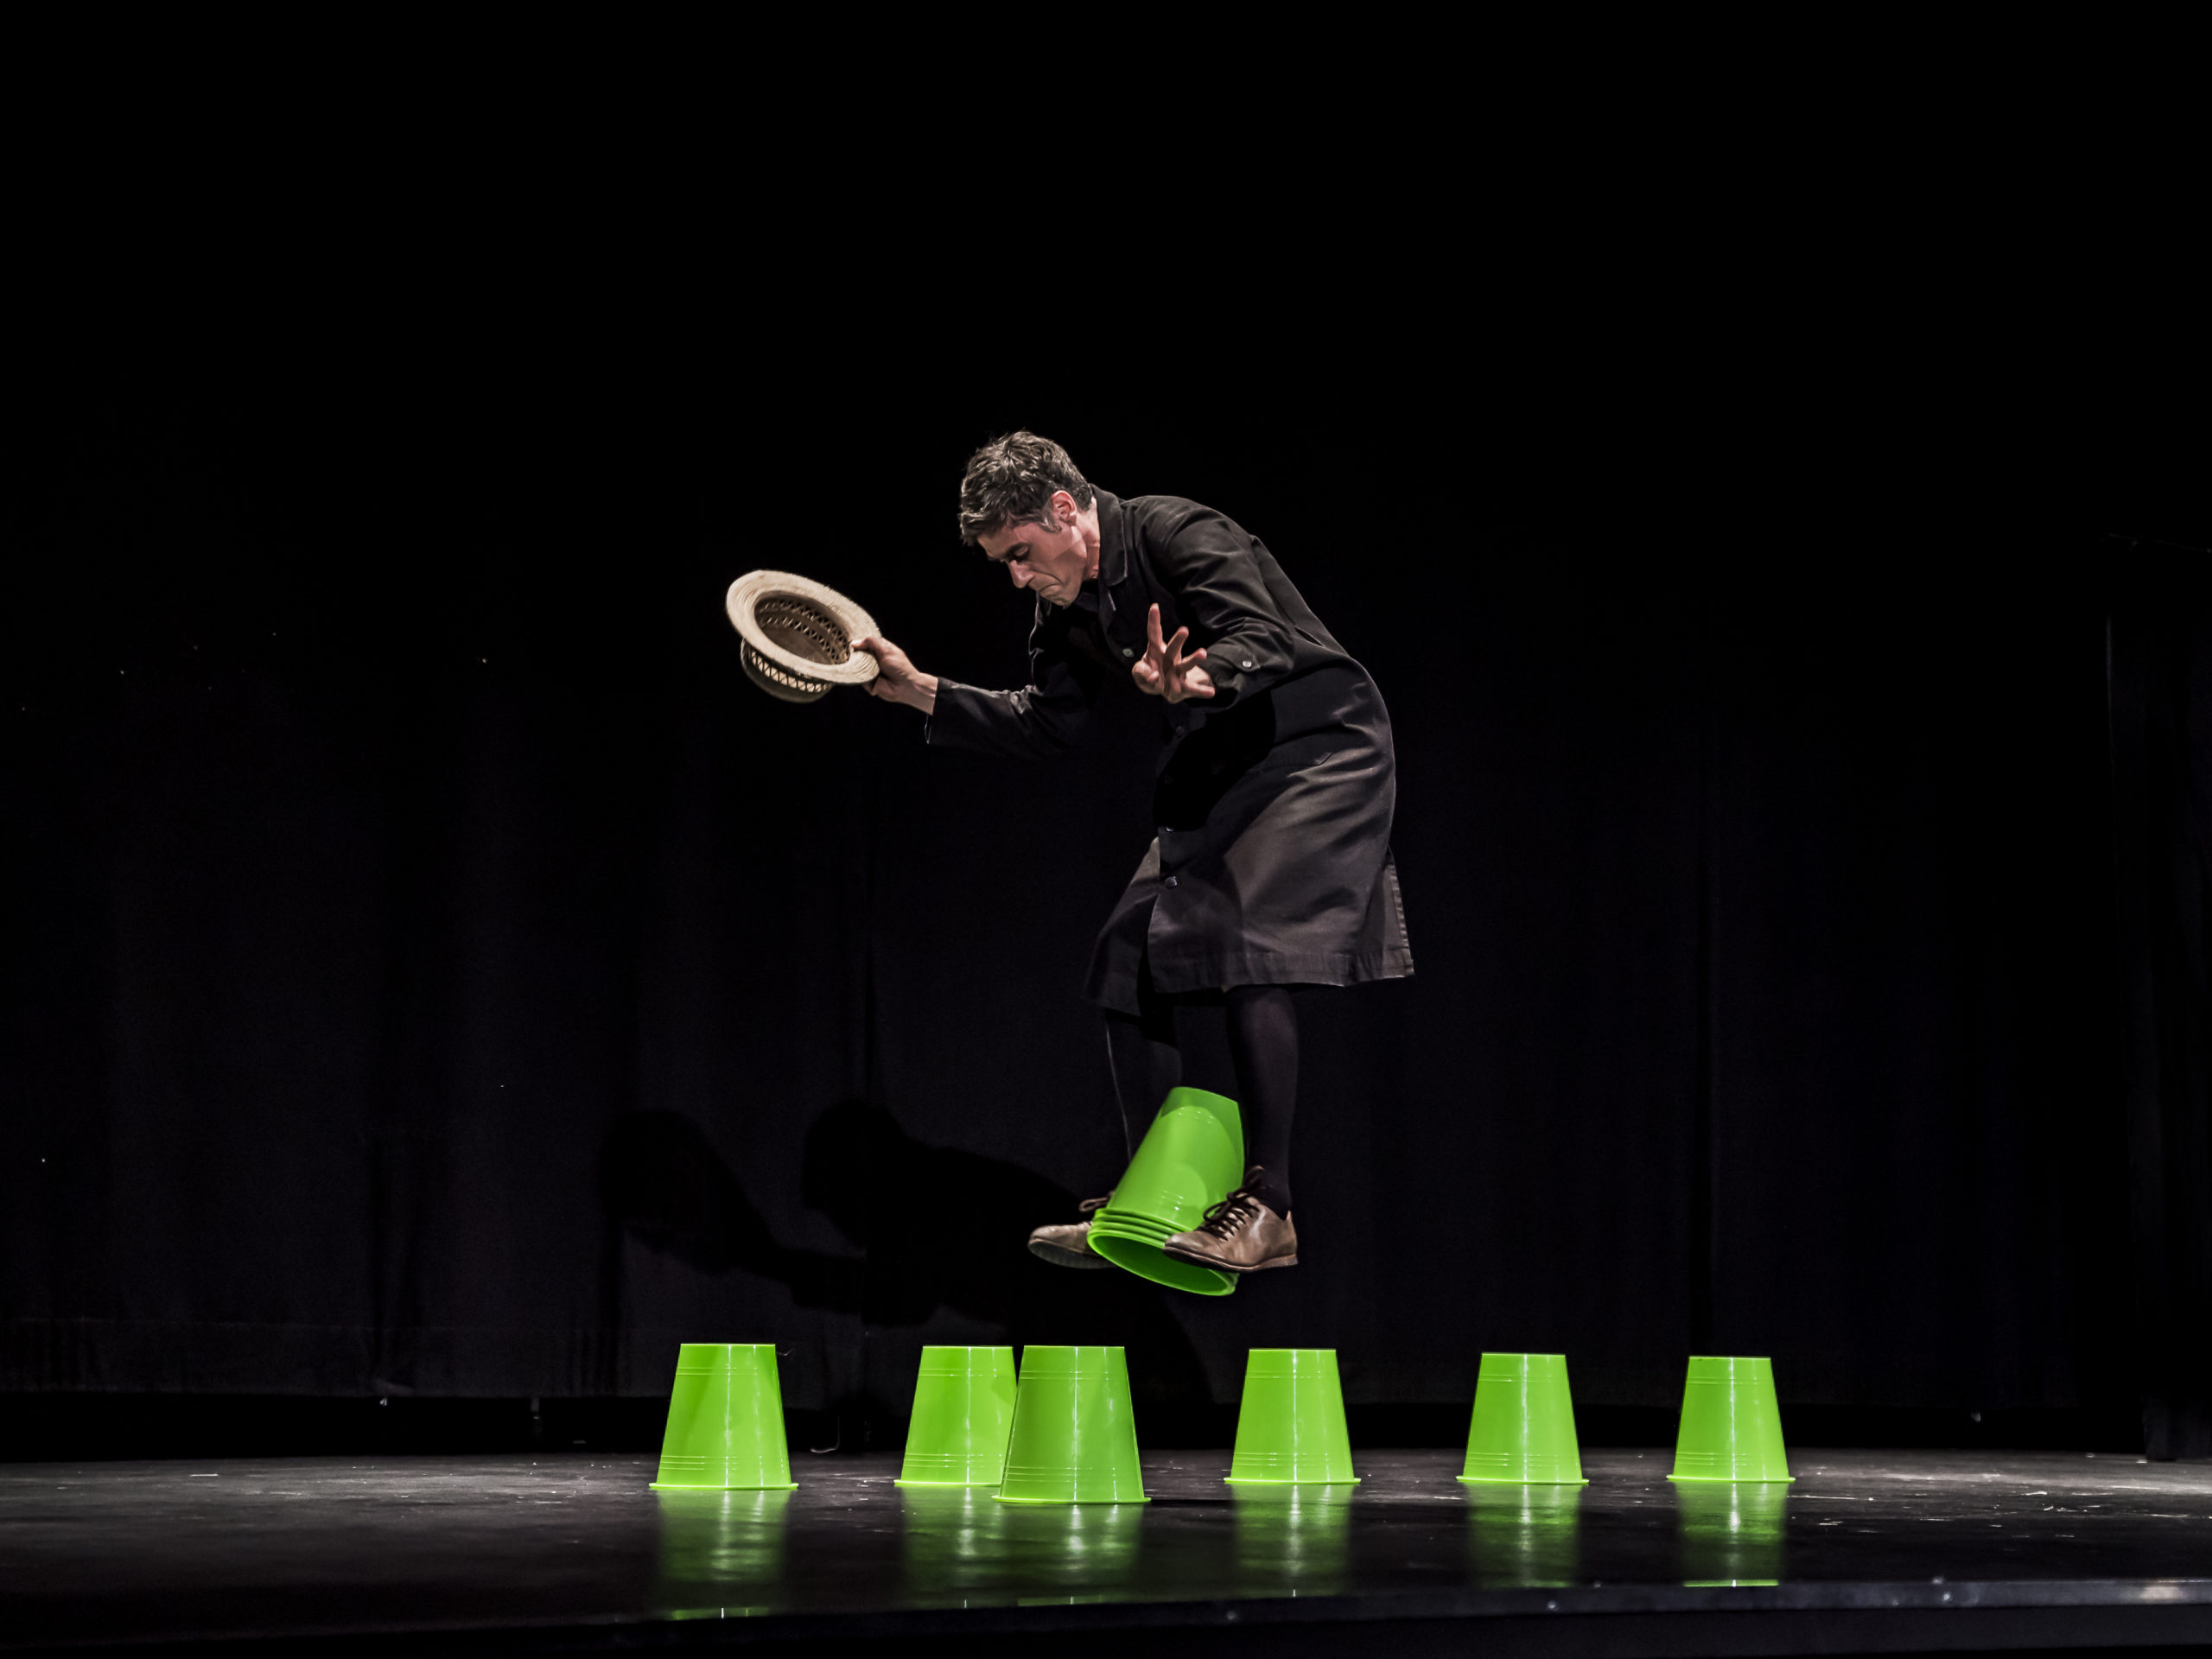 “Bakéké”, da Zō per “Cirque” Fabrizio Rosselli trasforma i fallimenti in giochi con i secchi